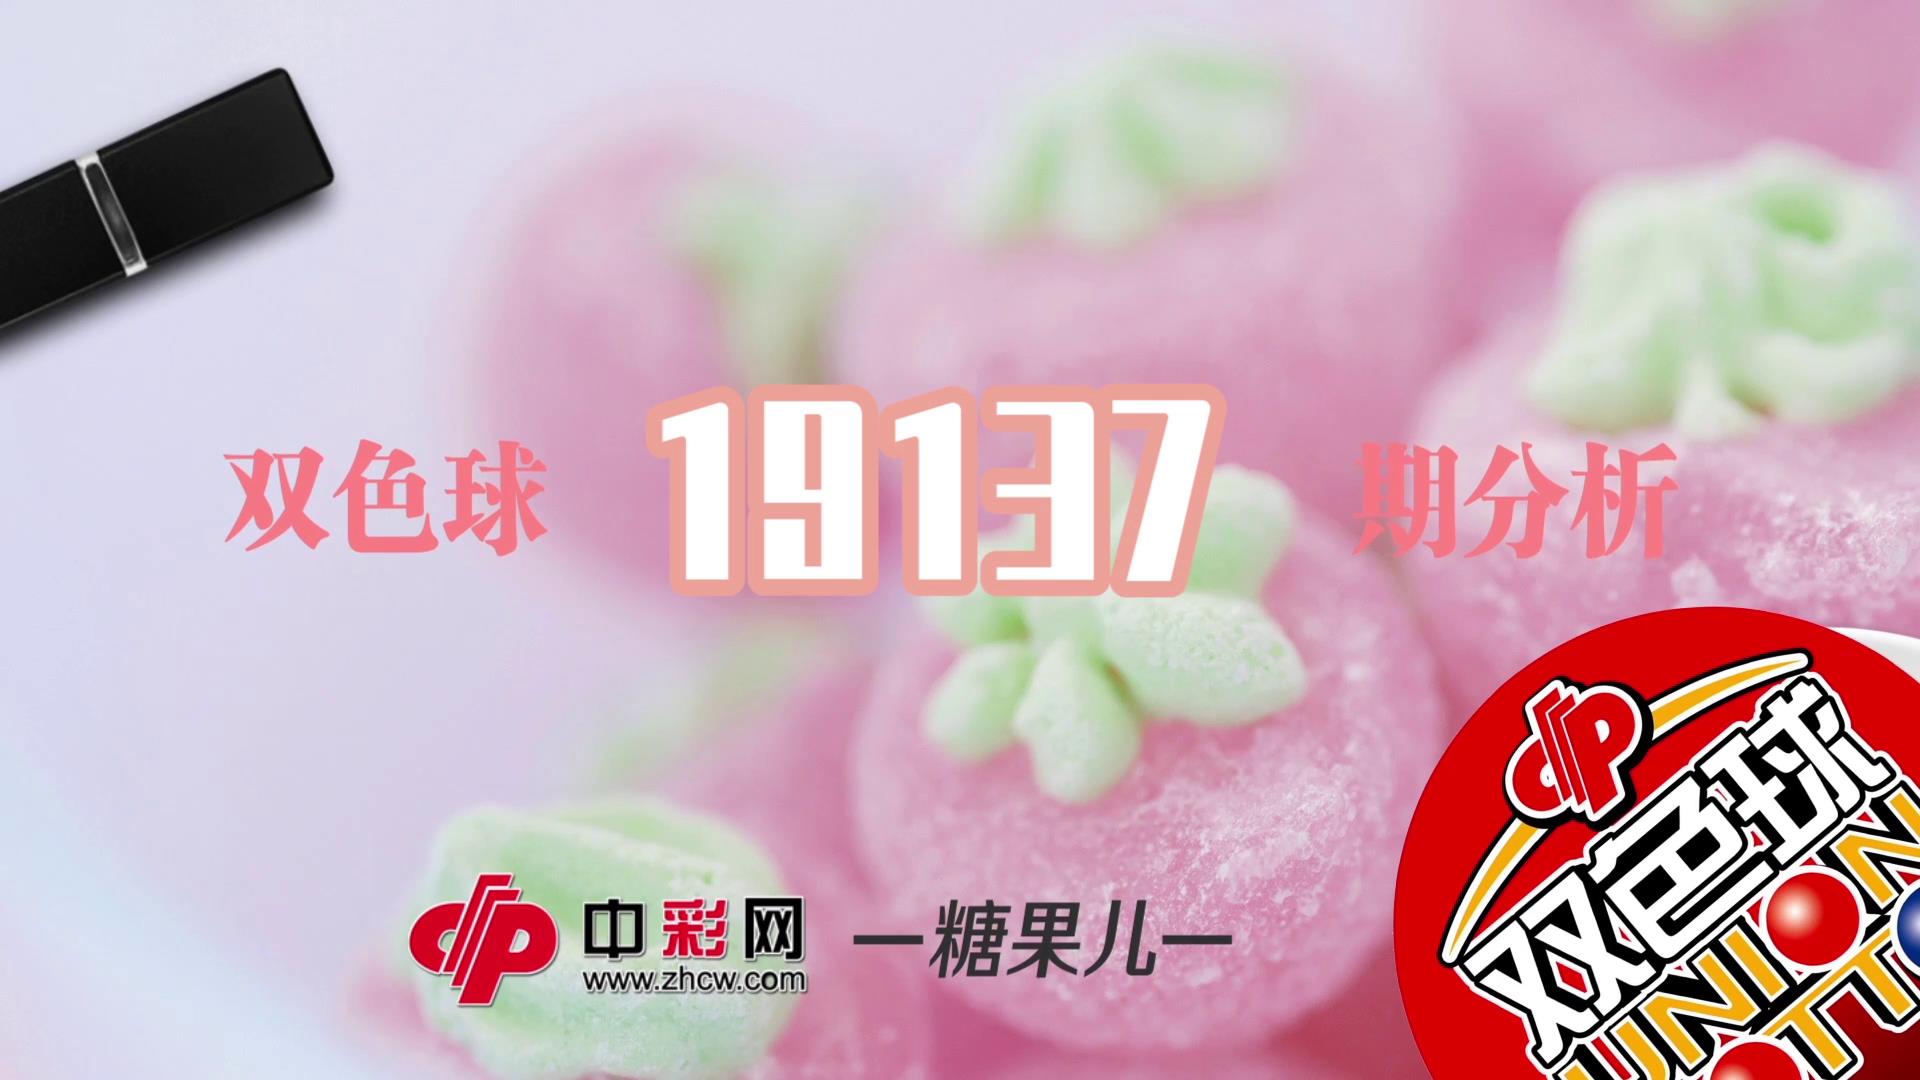 【中彩视频】糖果儿双色球第19137期